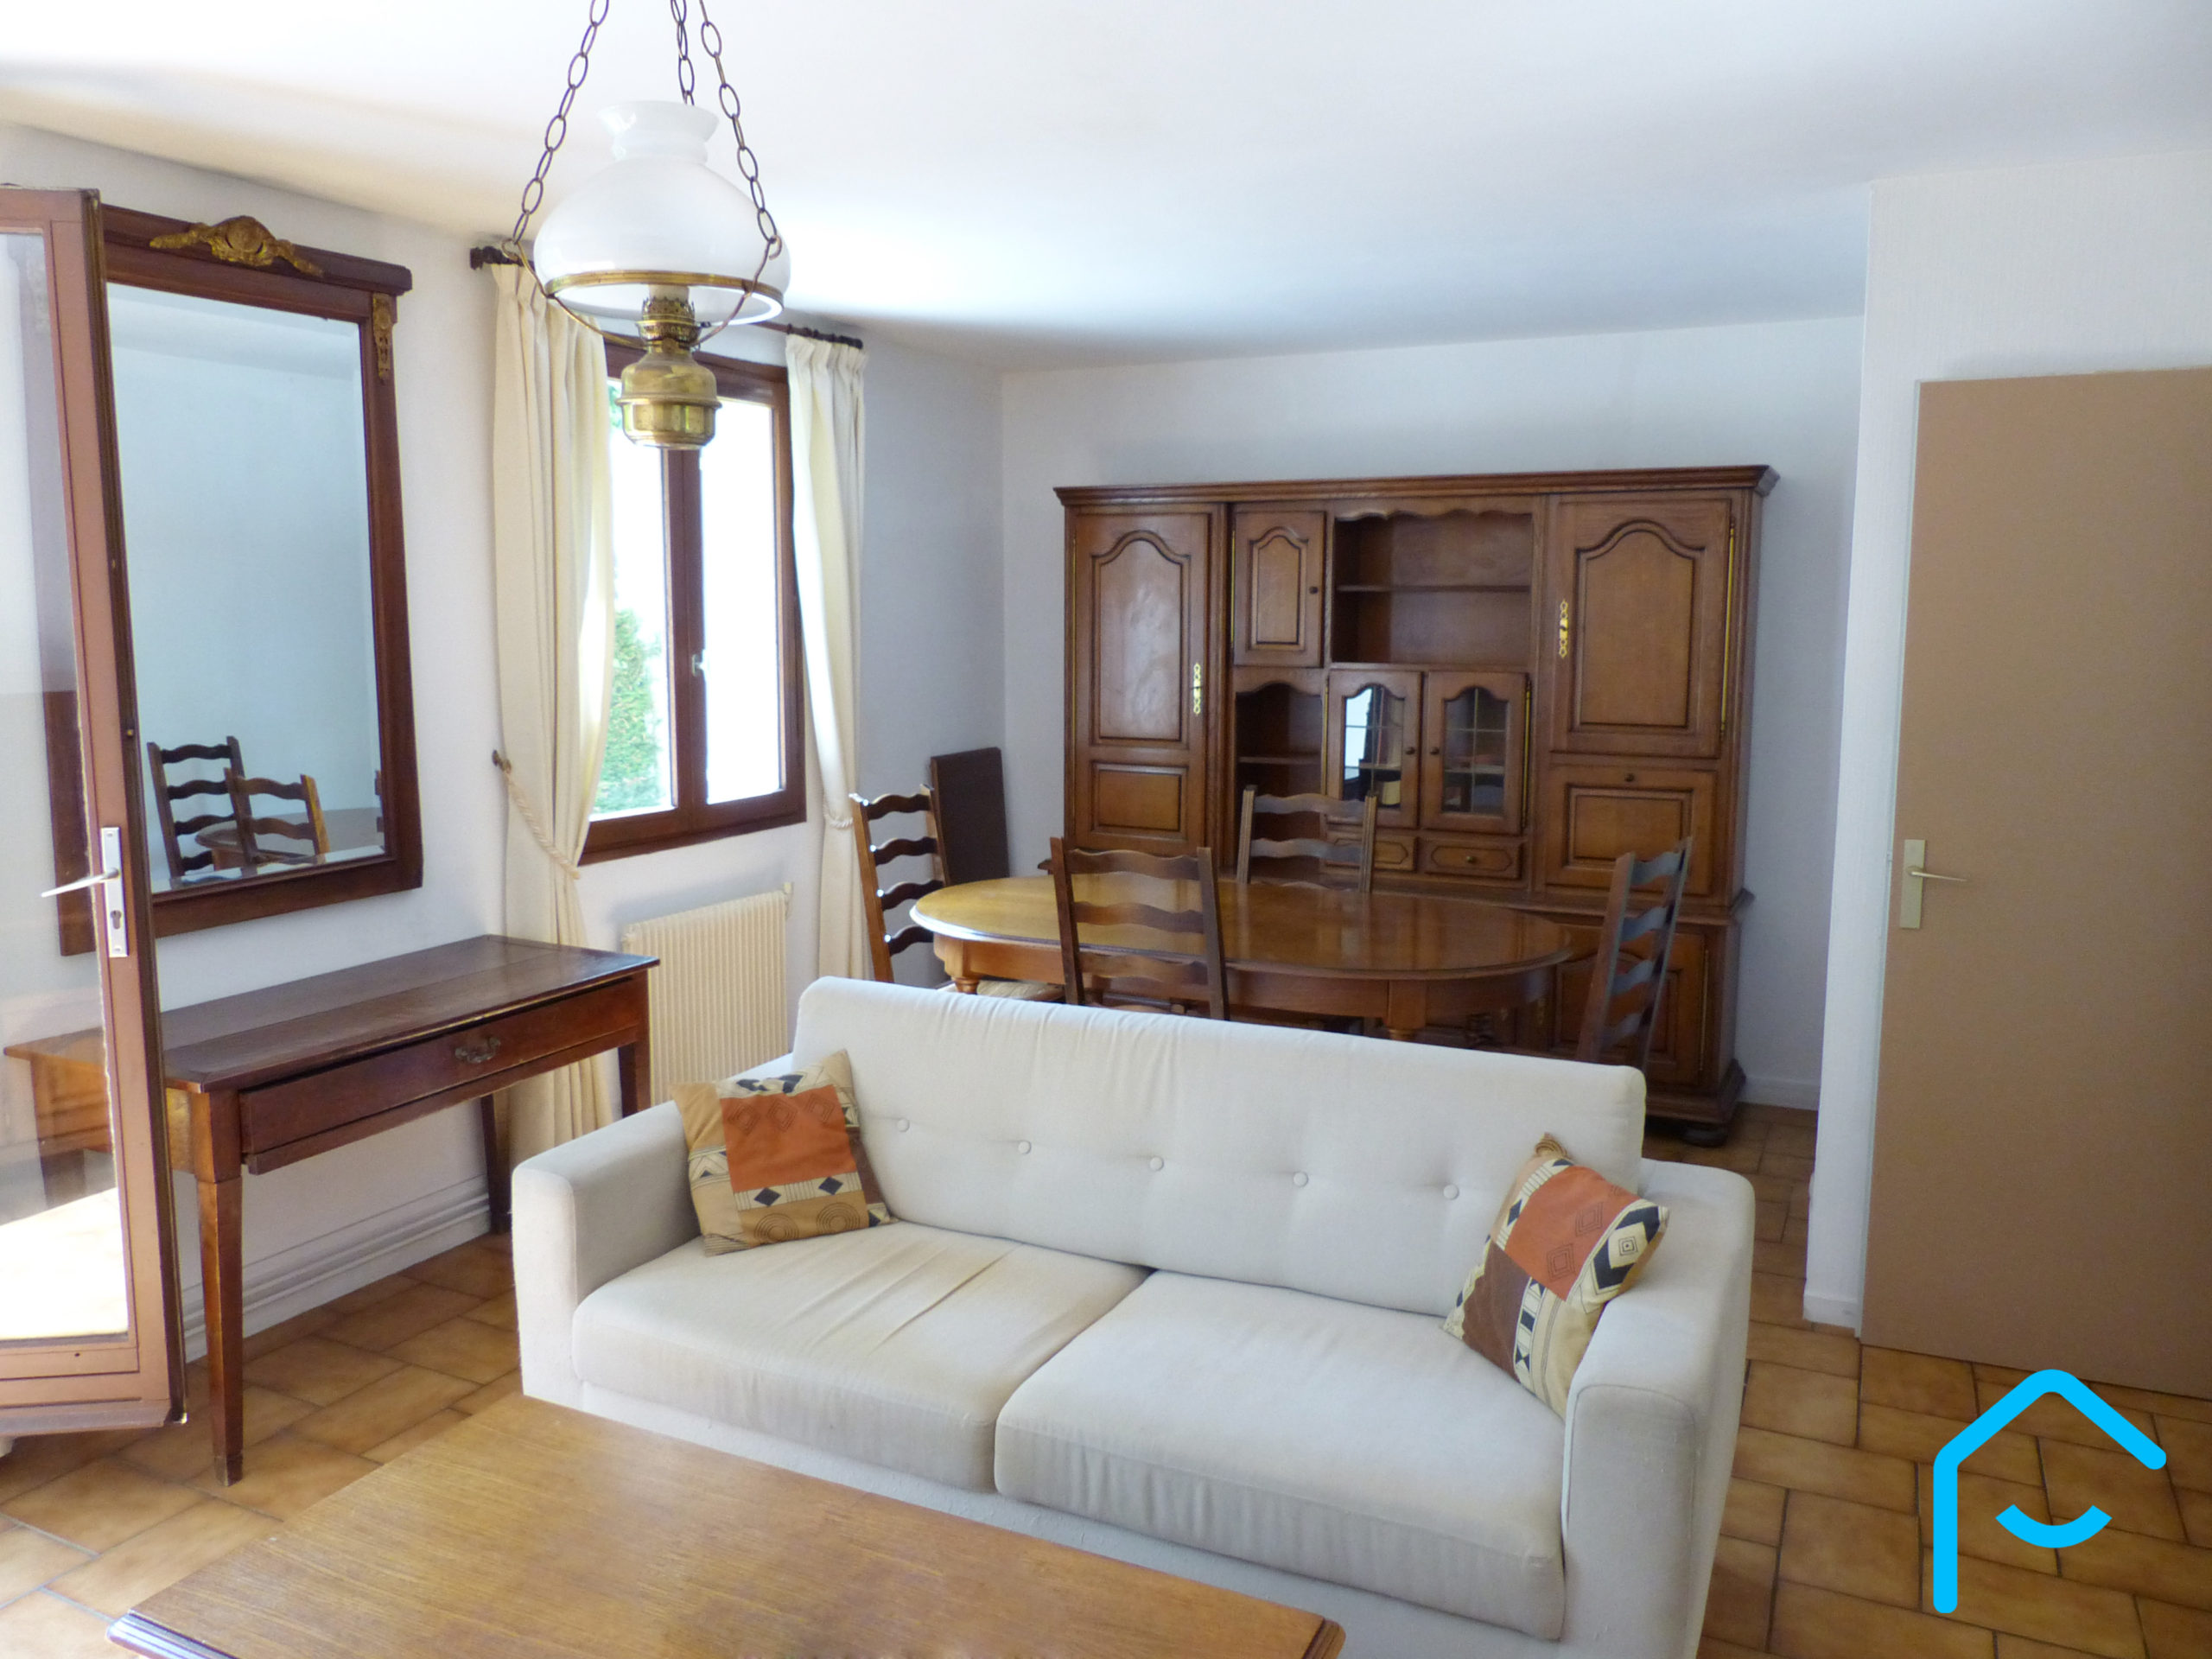 A vendre maison Chambéry Savoie jardin 3 chambres garage vue 3